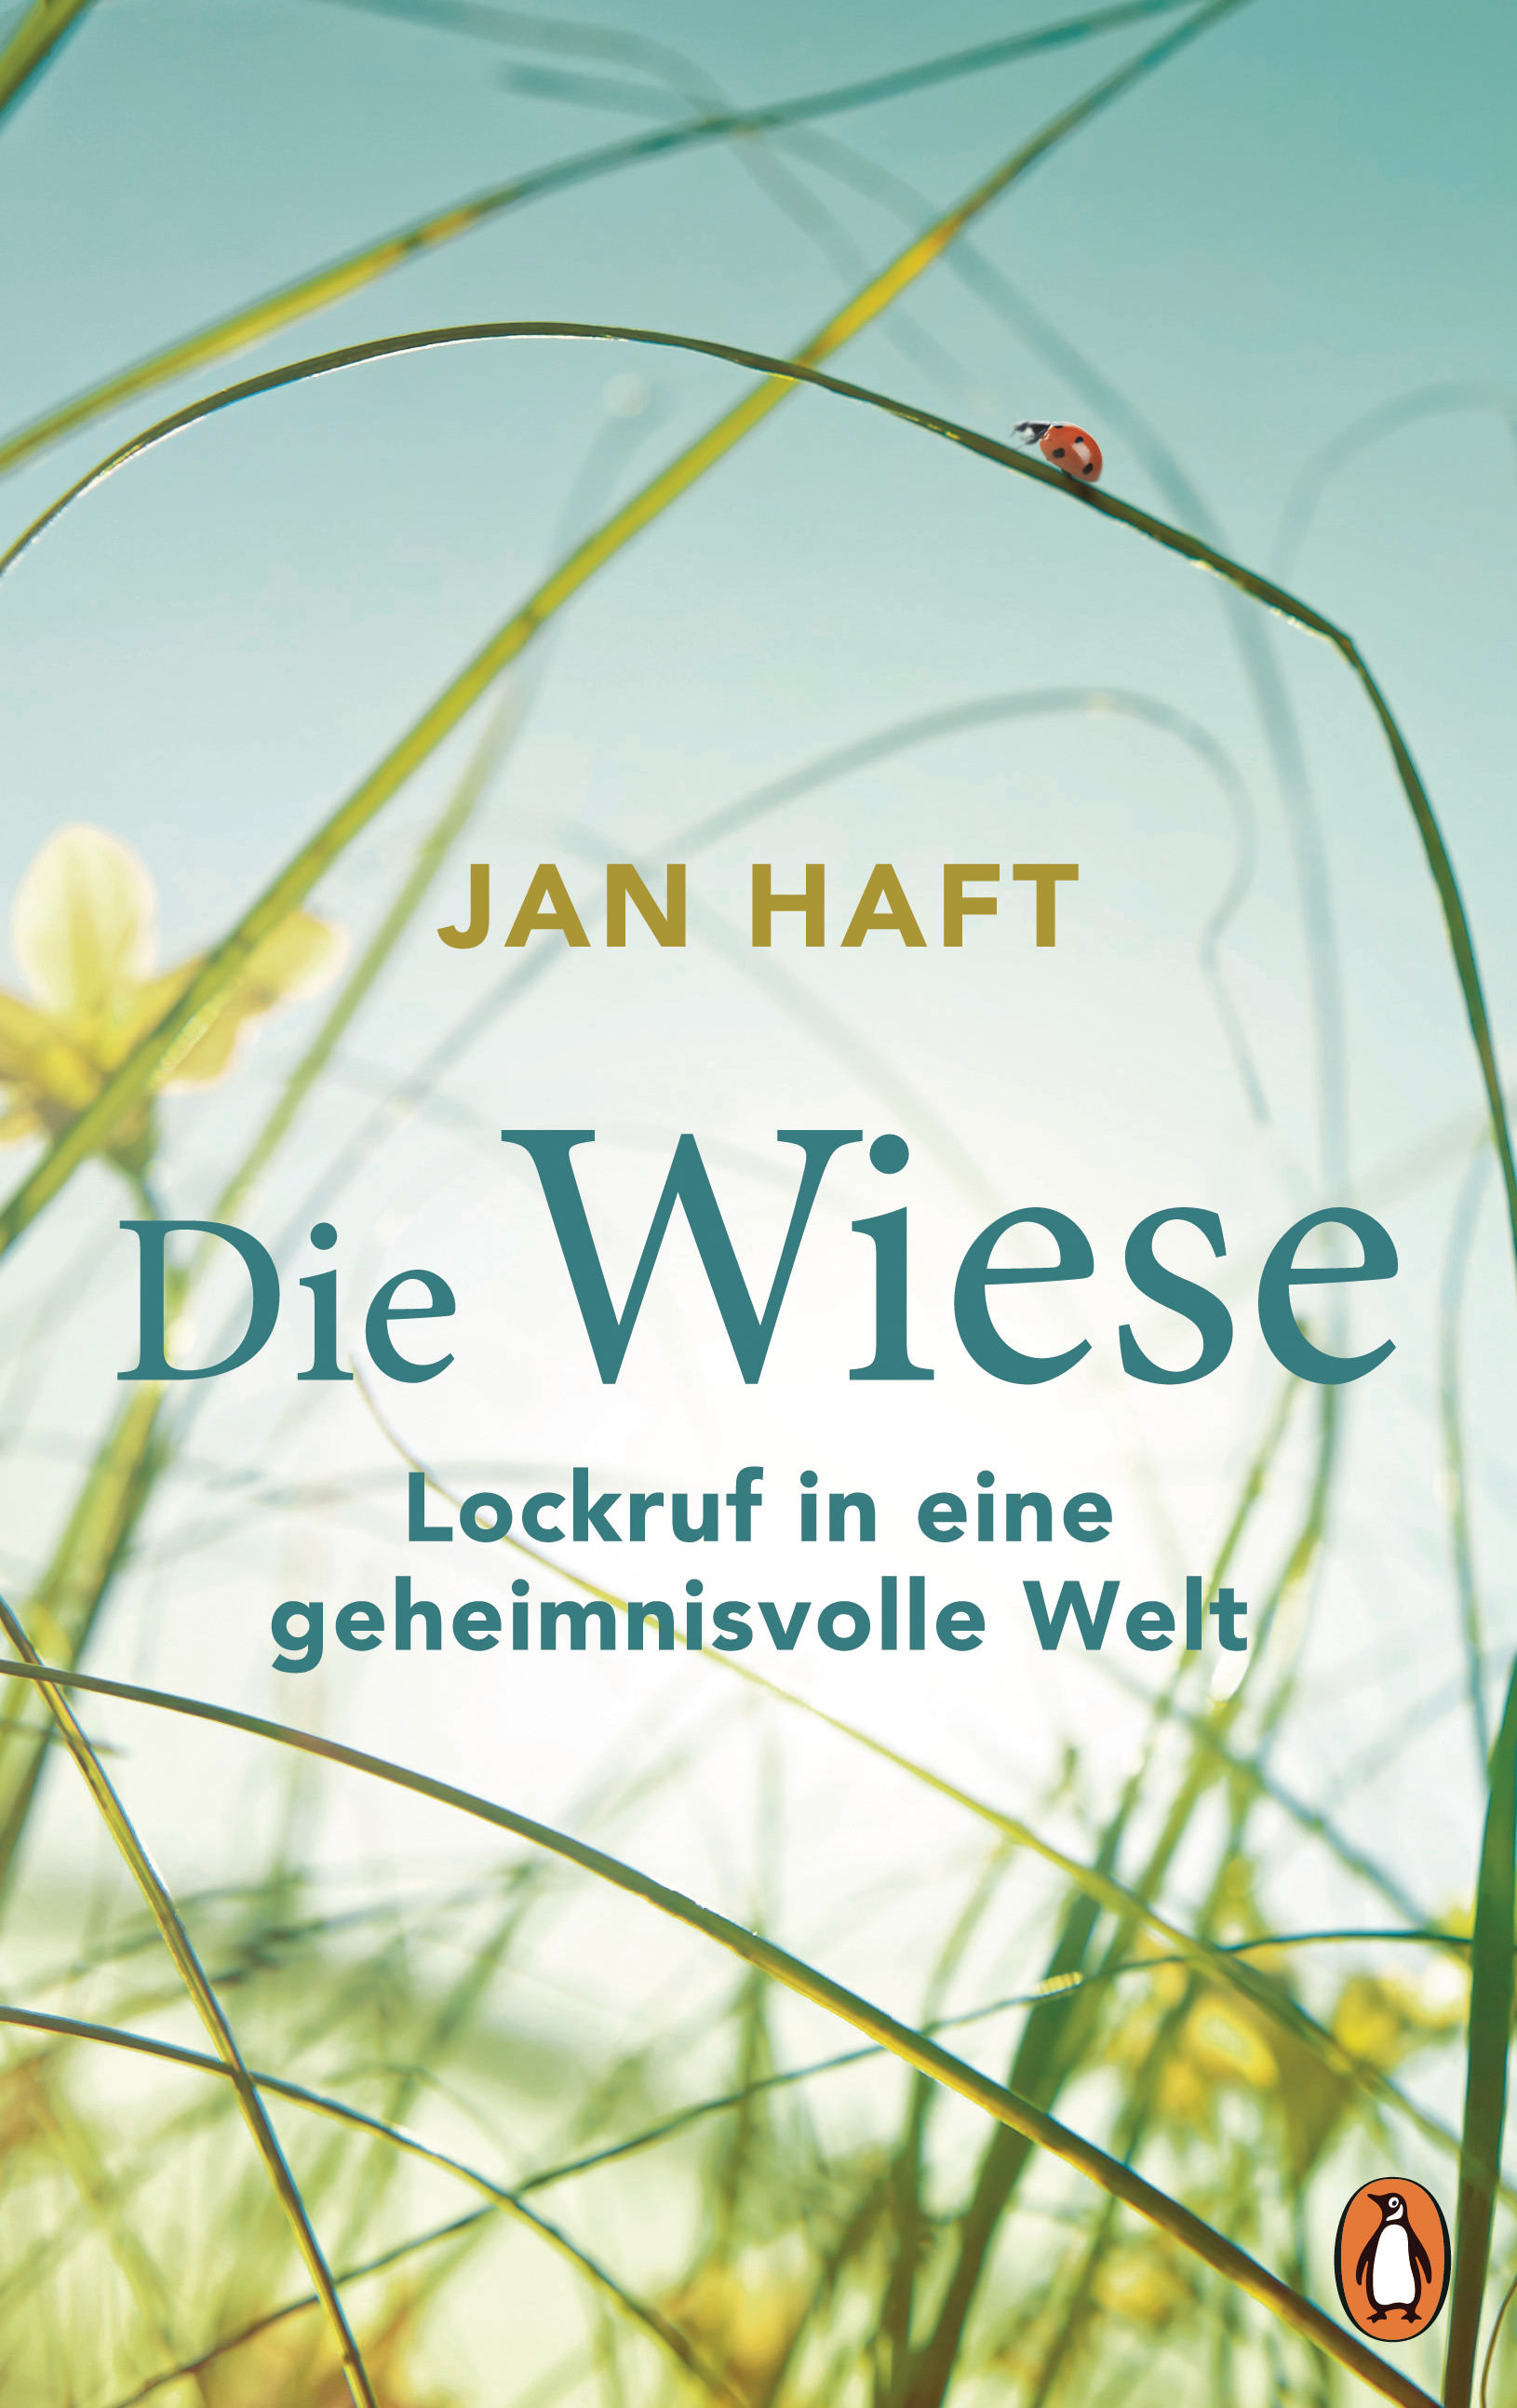 Buchcover: Jan Haft: Die Wiese